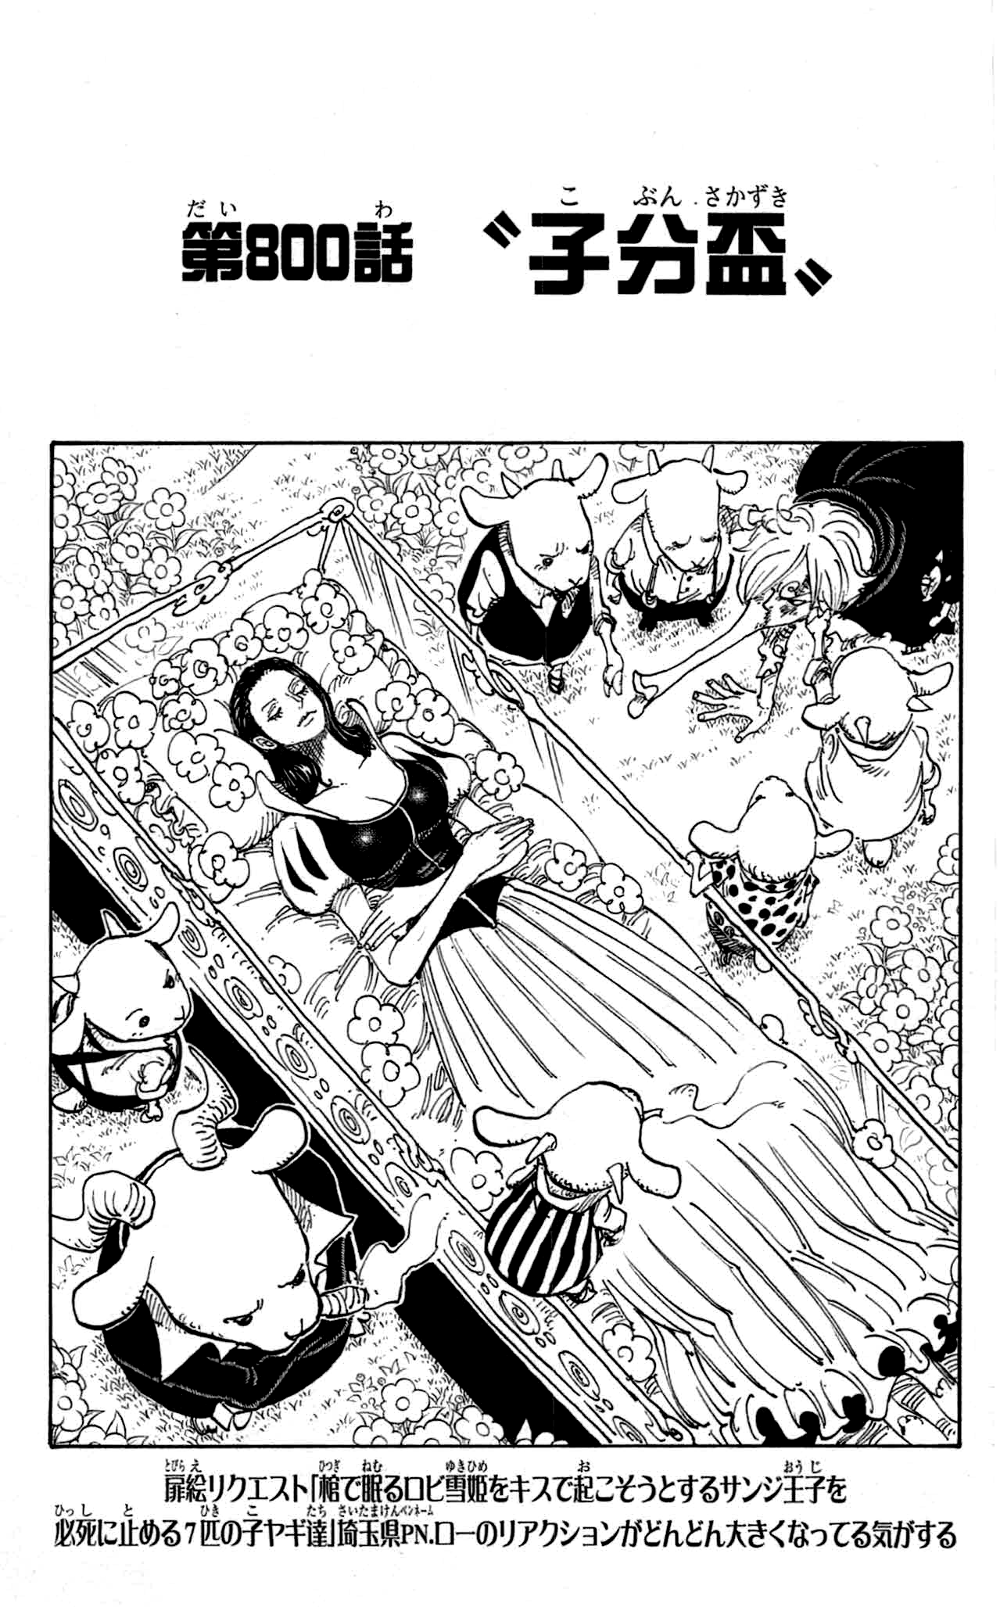 Chapitre 800 One Piece Encyclopedie Fandom